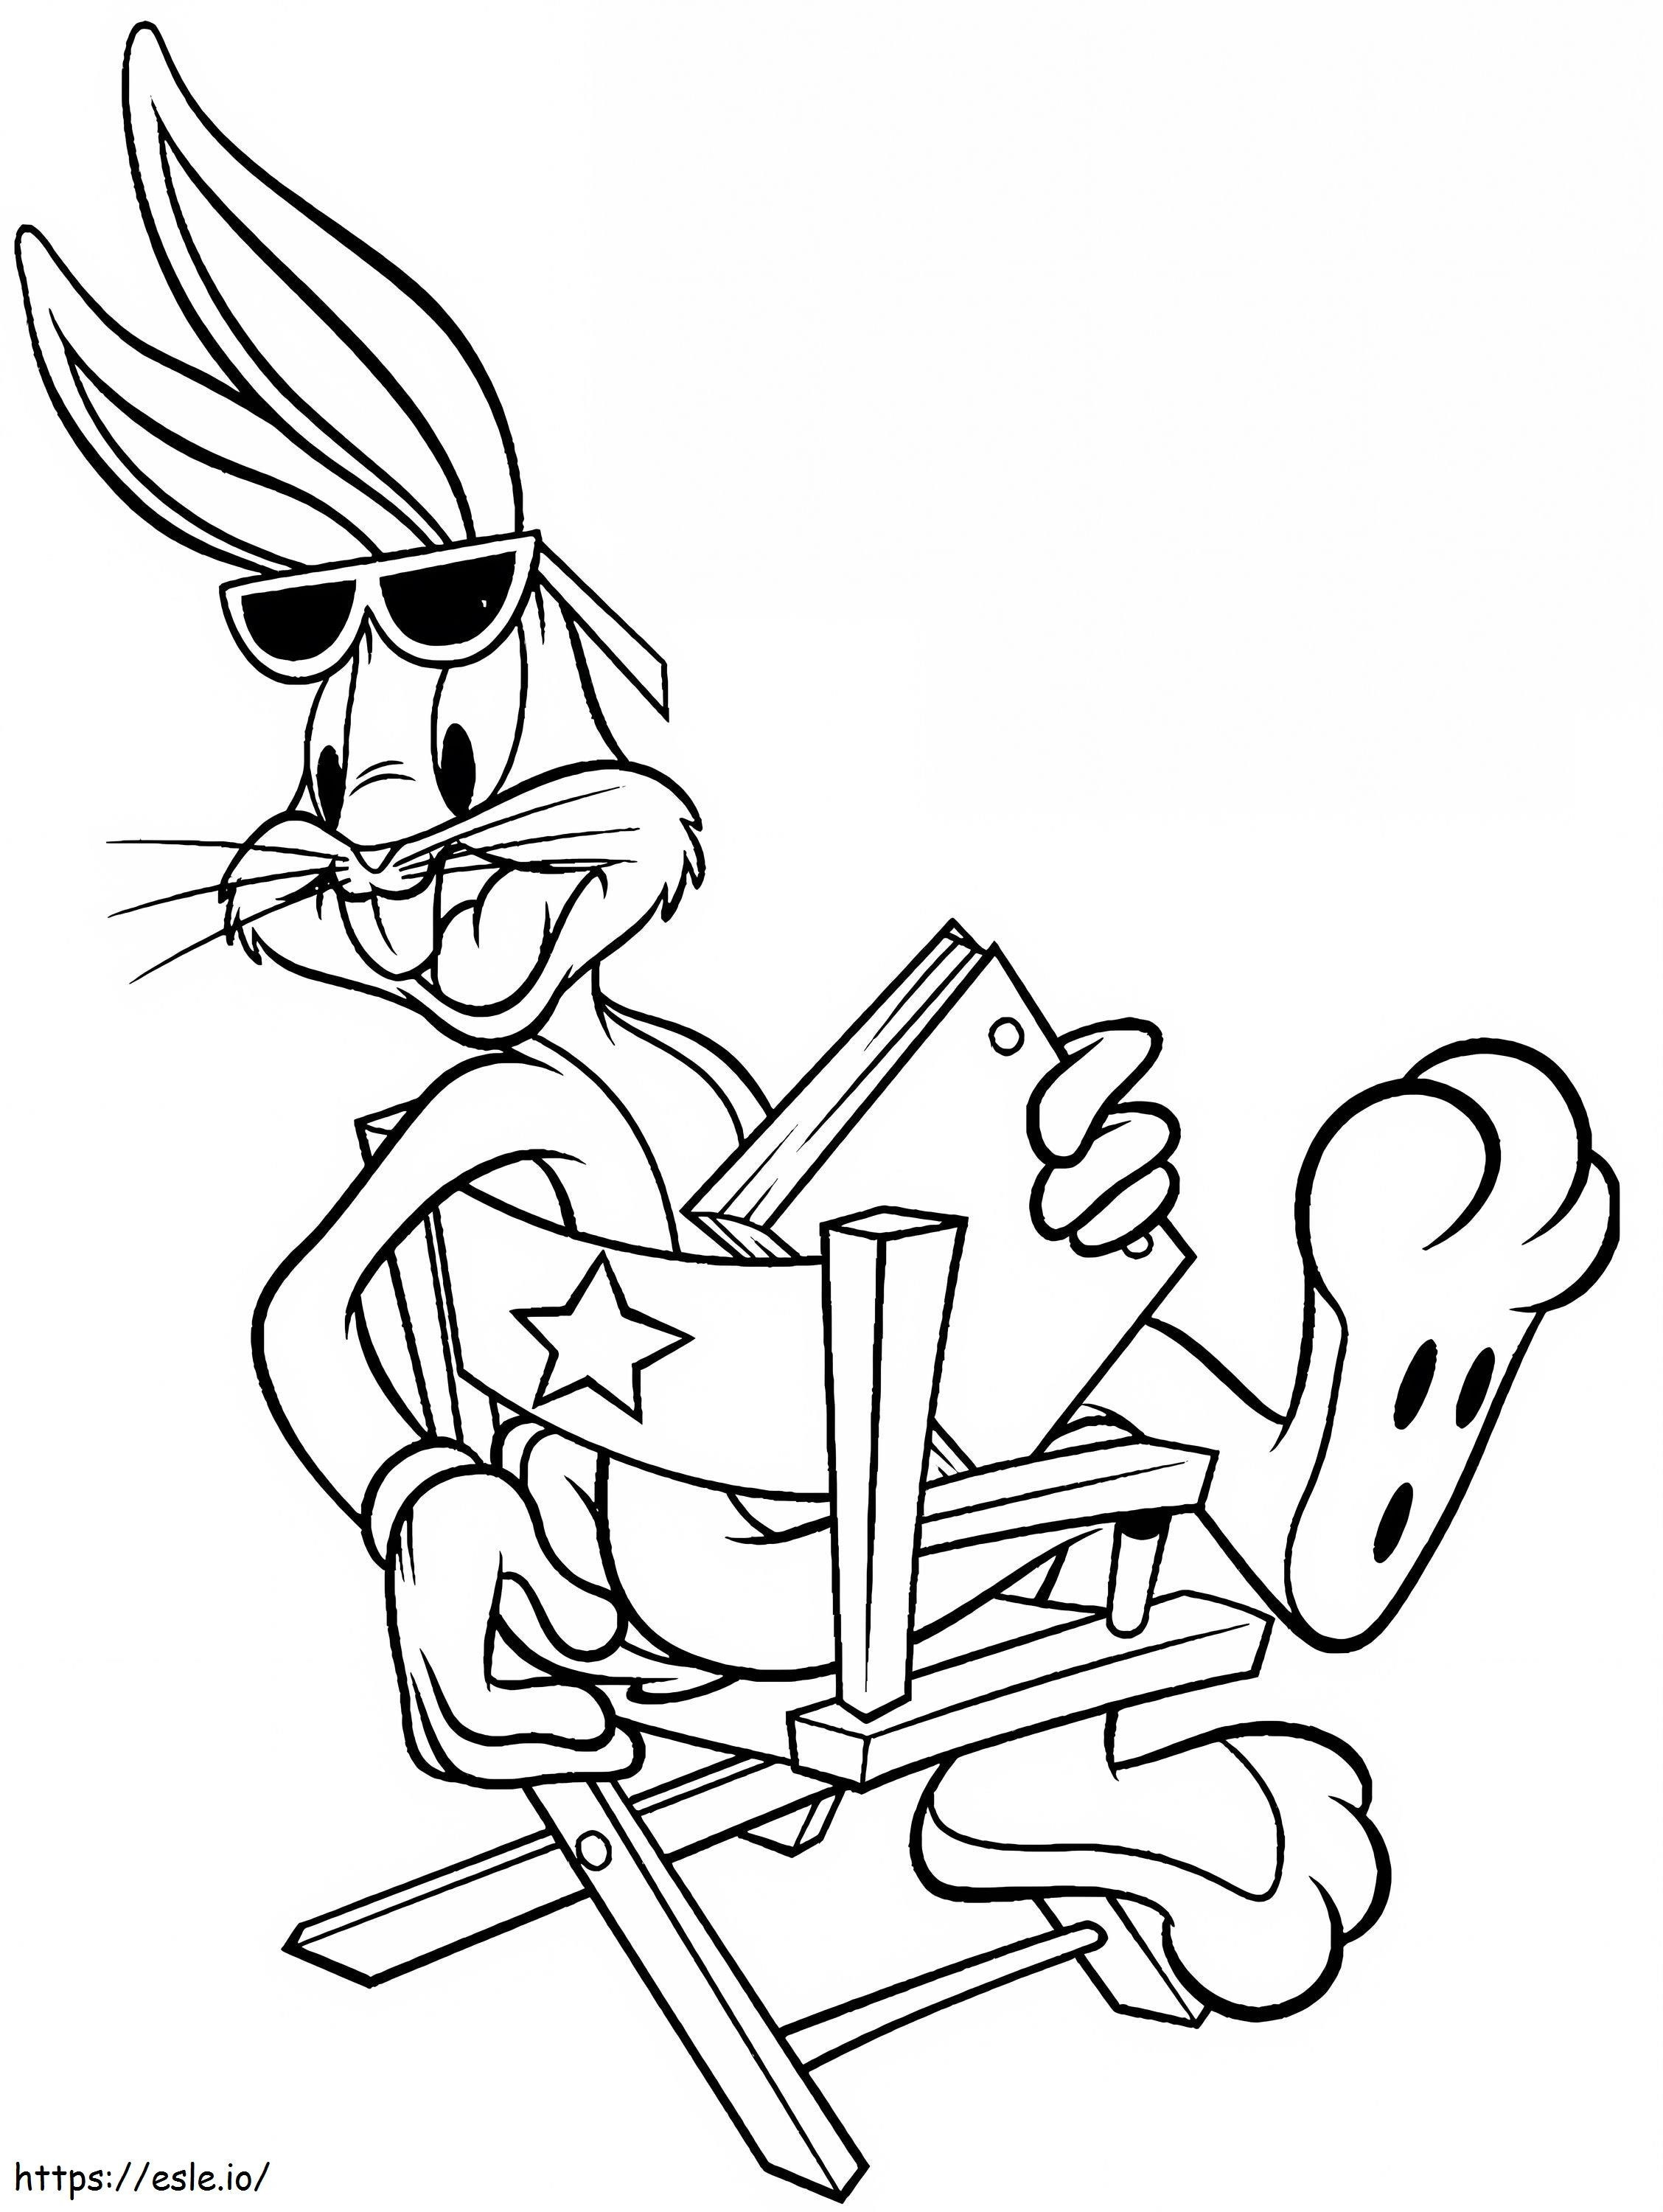 Bugs Bunny sosteniendo un libro sentado en una silla para colorear